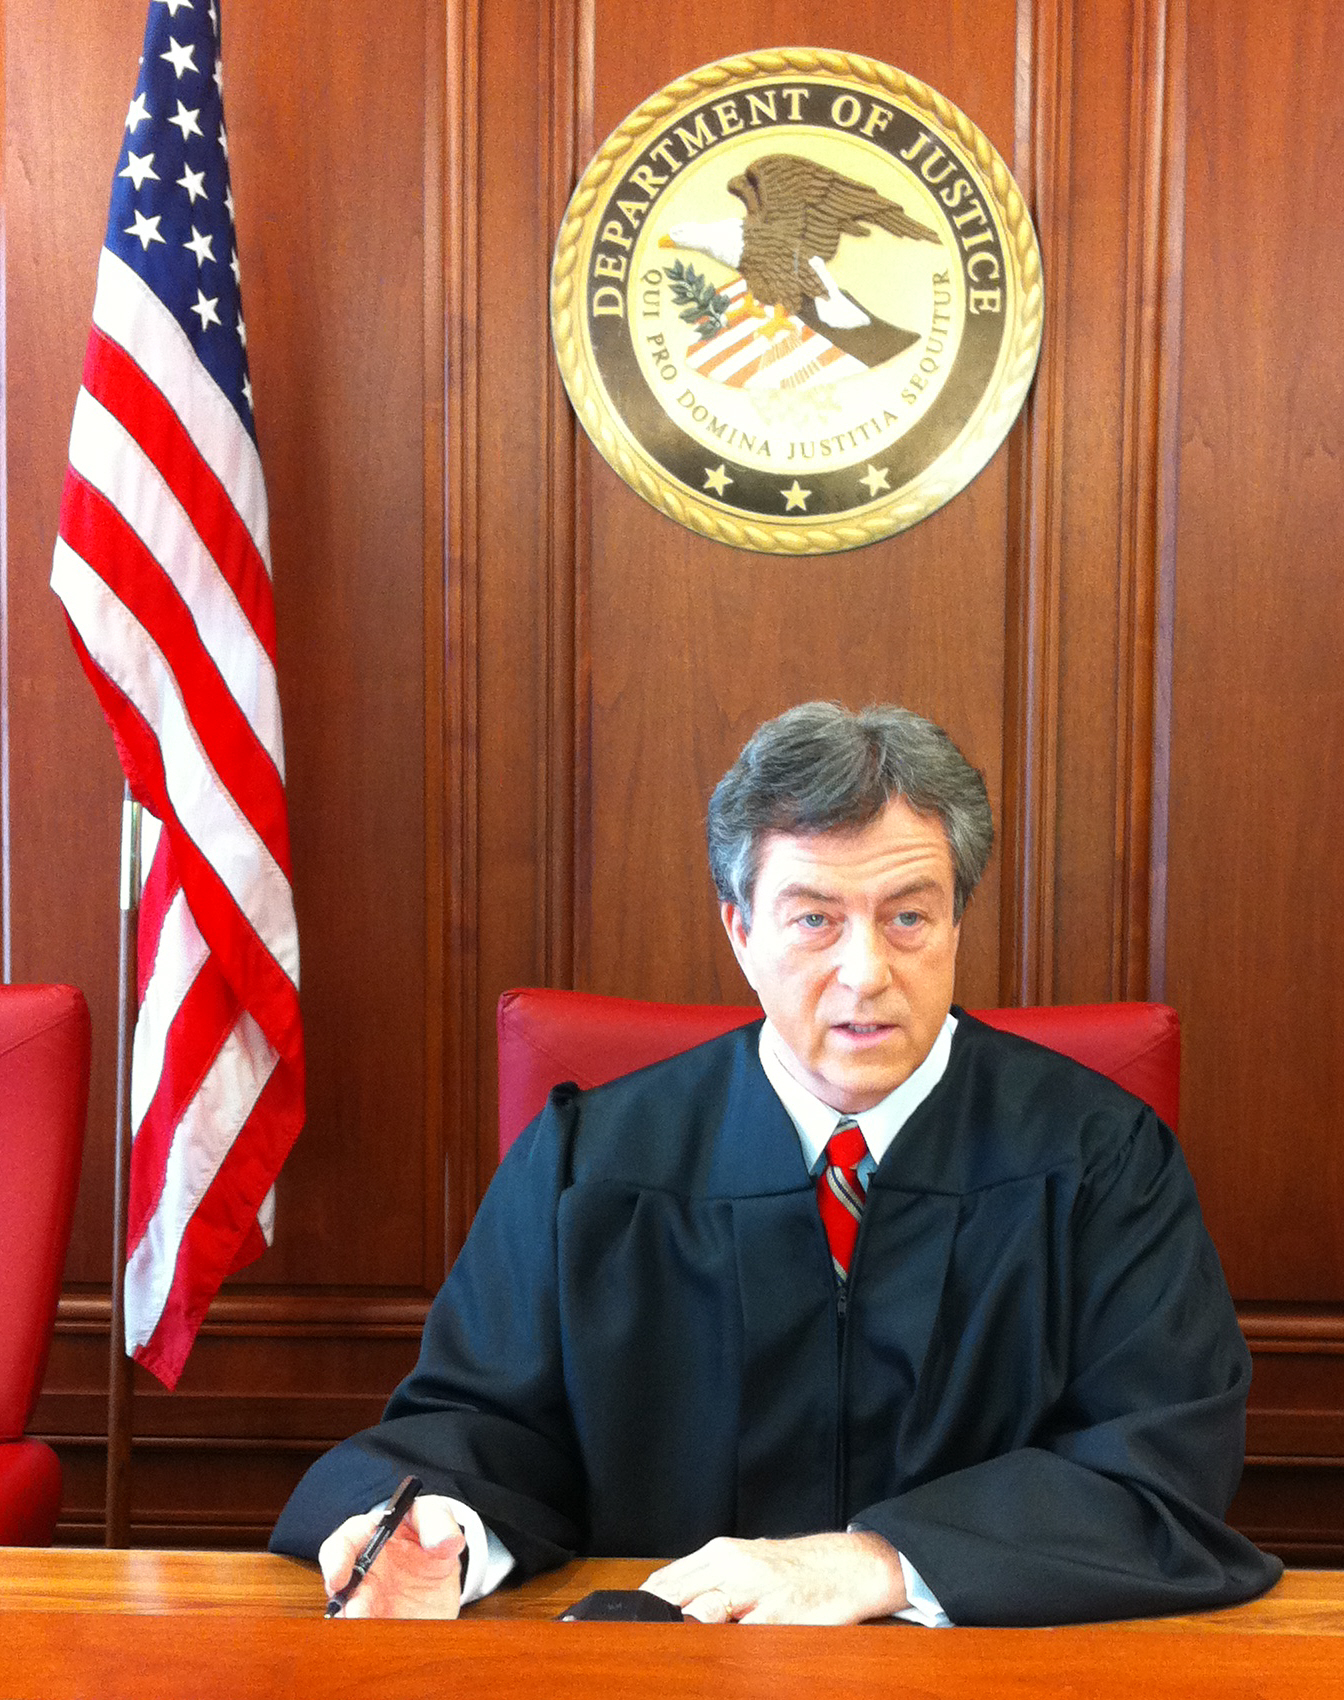 Walt Sloan as Judge Swanson in 